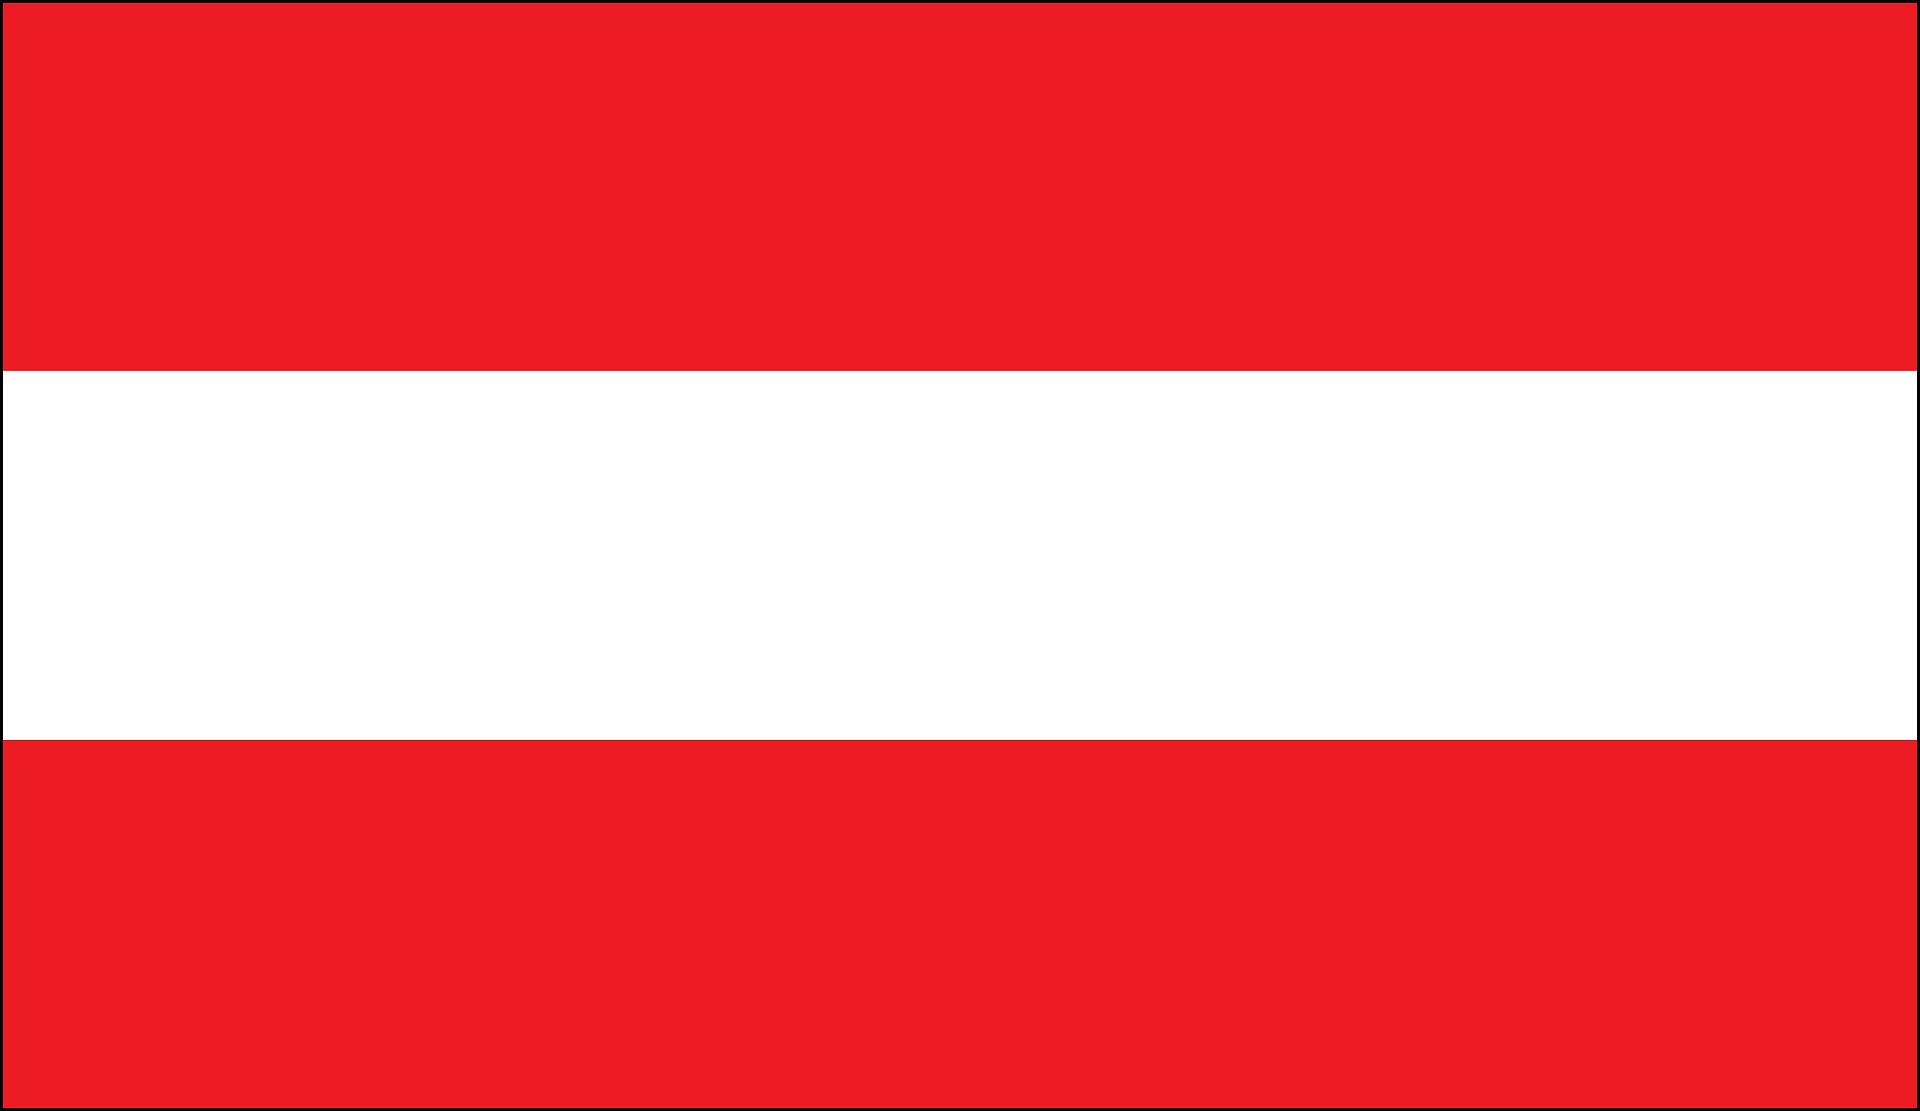 Die österreichische Fahne